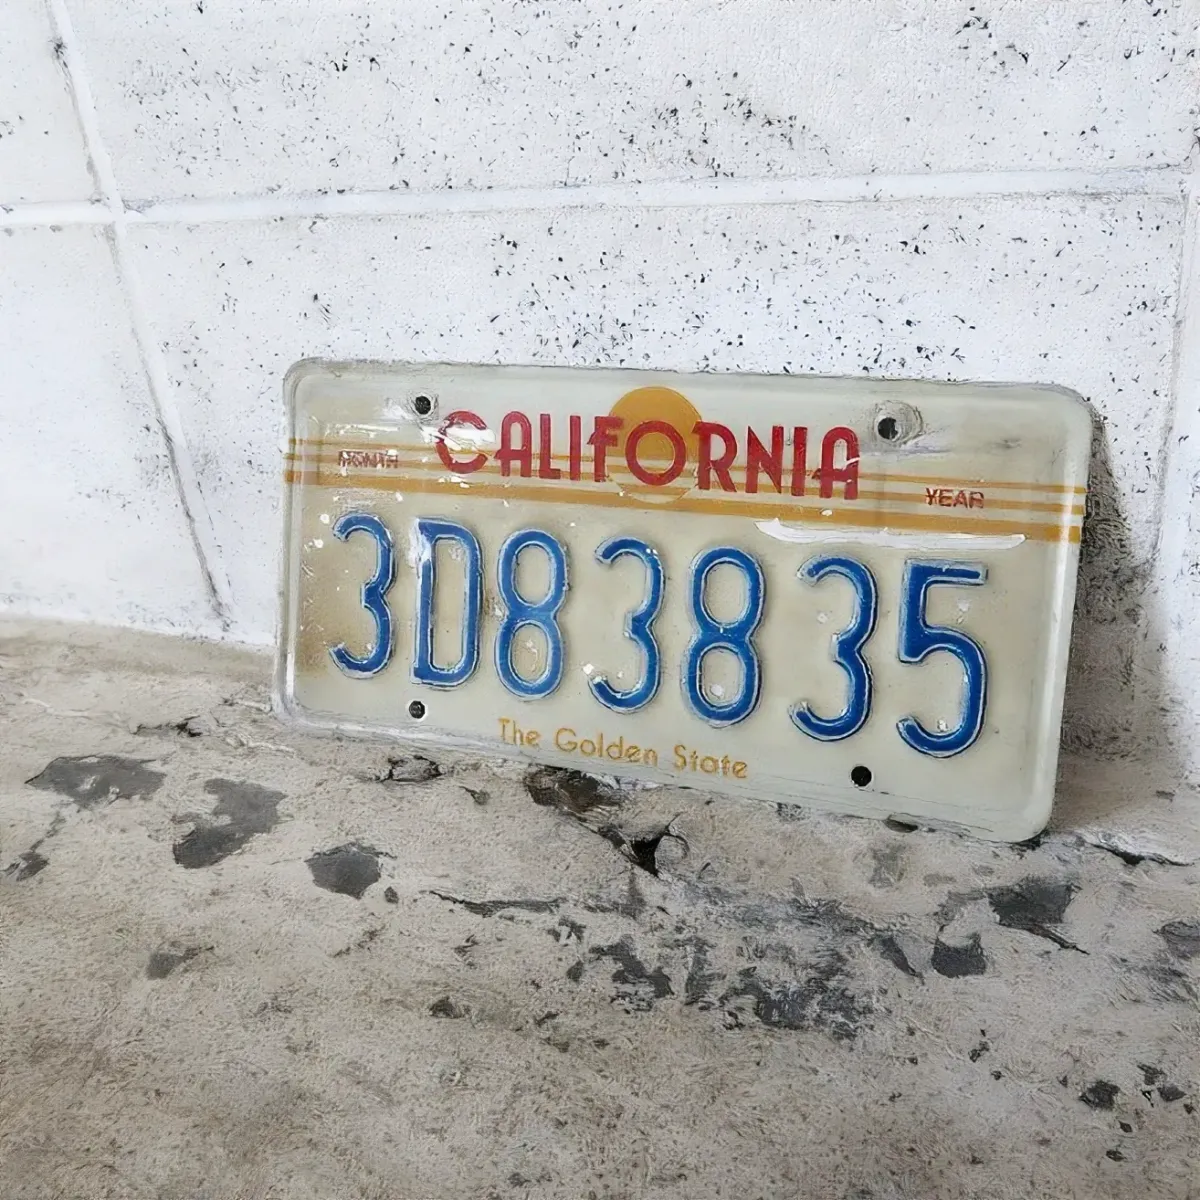 80's CALIFORNIA ビンテージ ナンバープレート サンセット